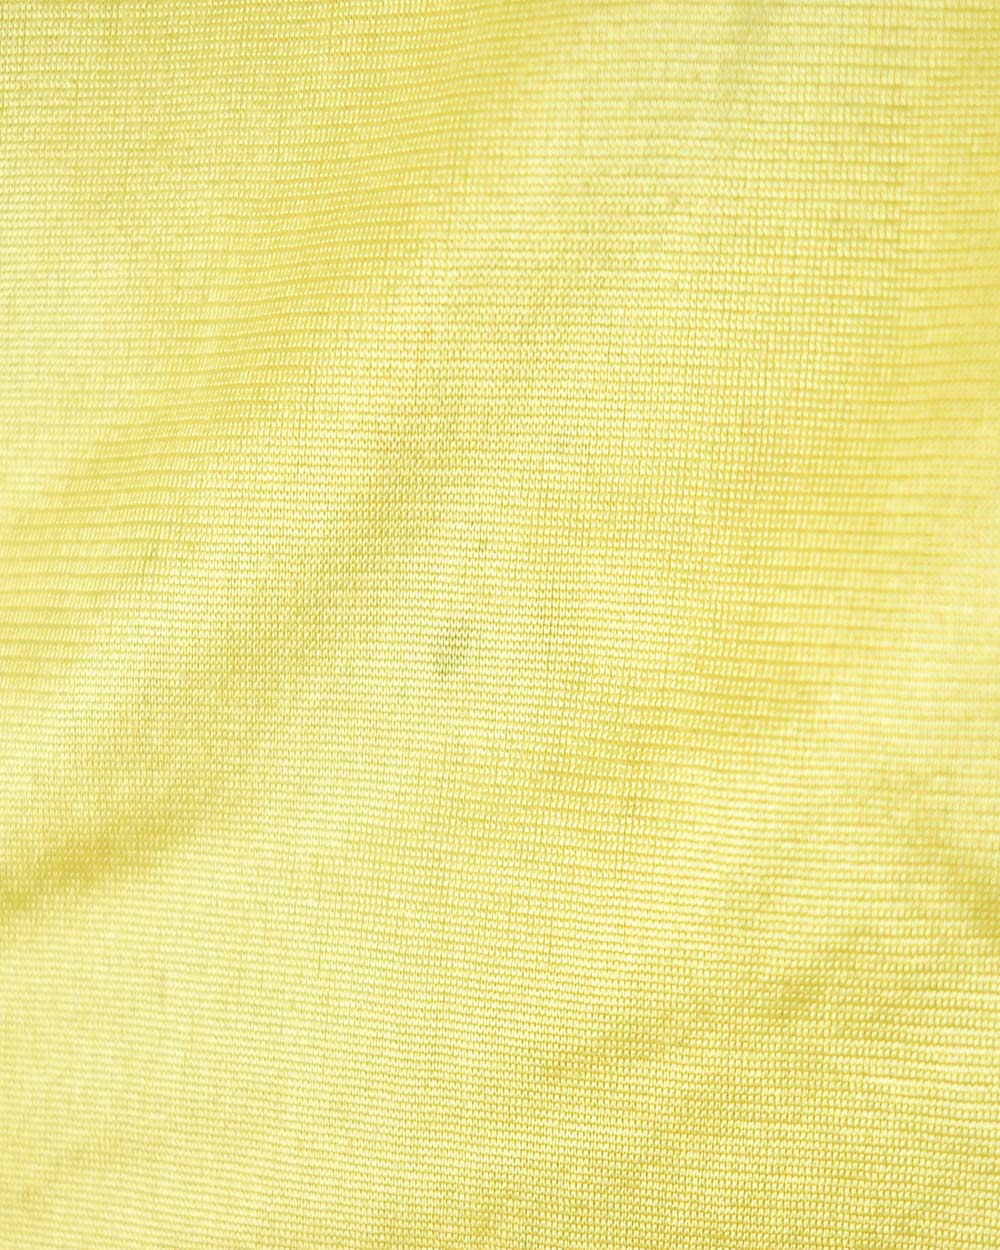 Yellow Adidas Equipment Shorts - Medium